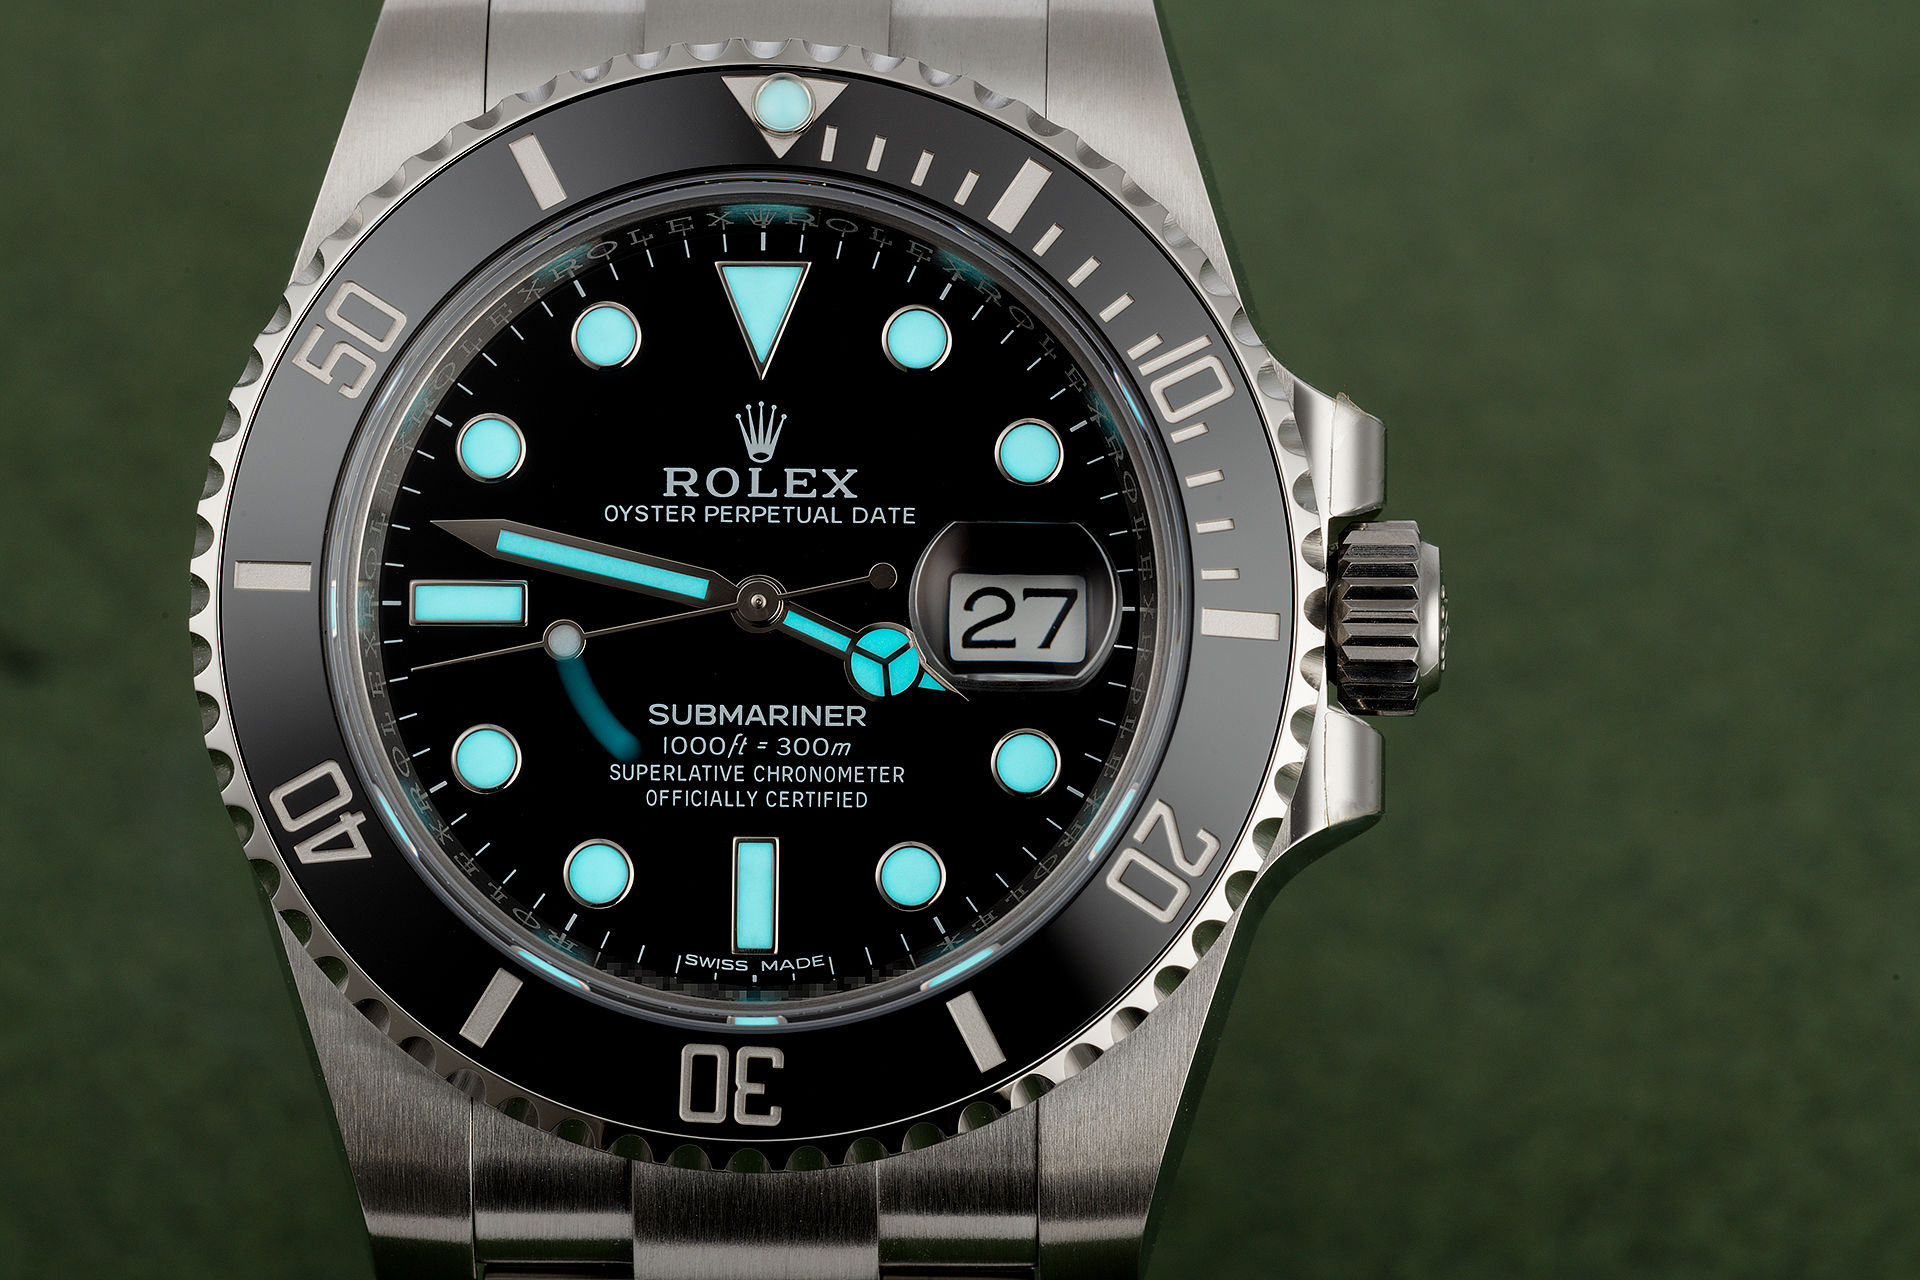 ref 116610LN | '5 Year Warranty' | Rolex Submariner Date